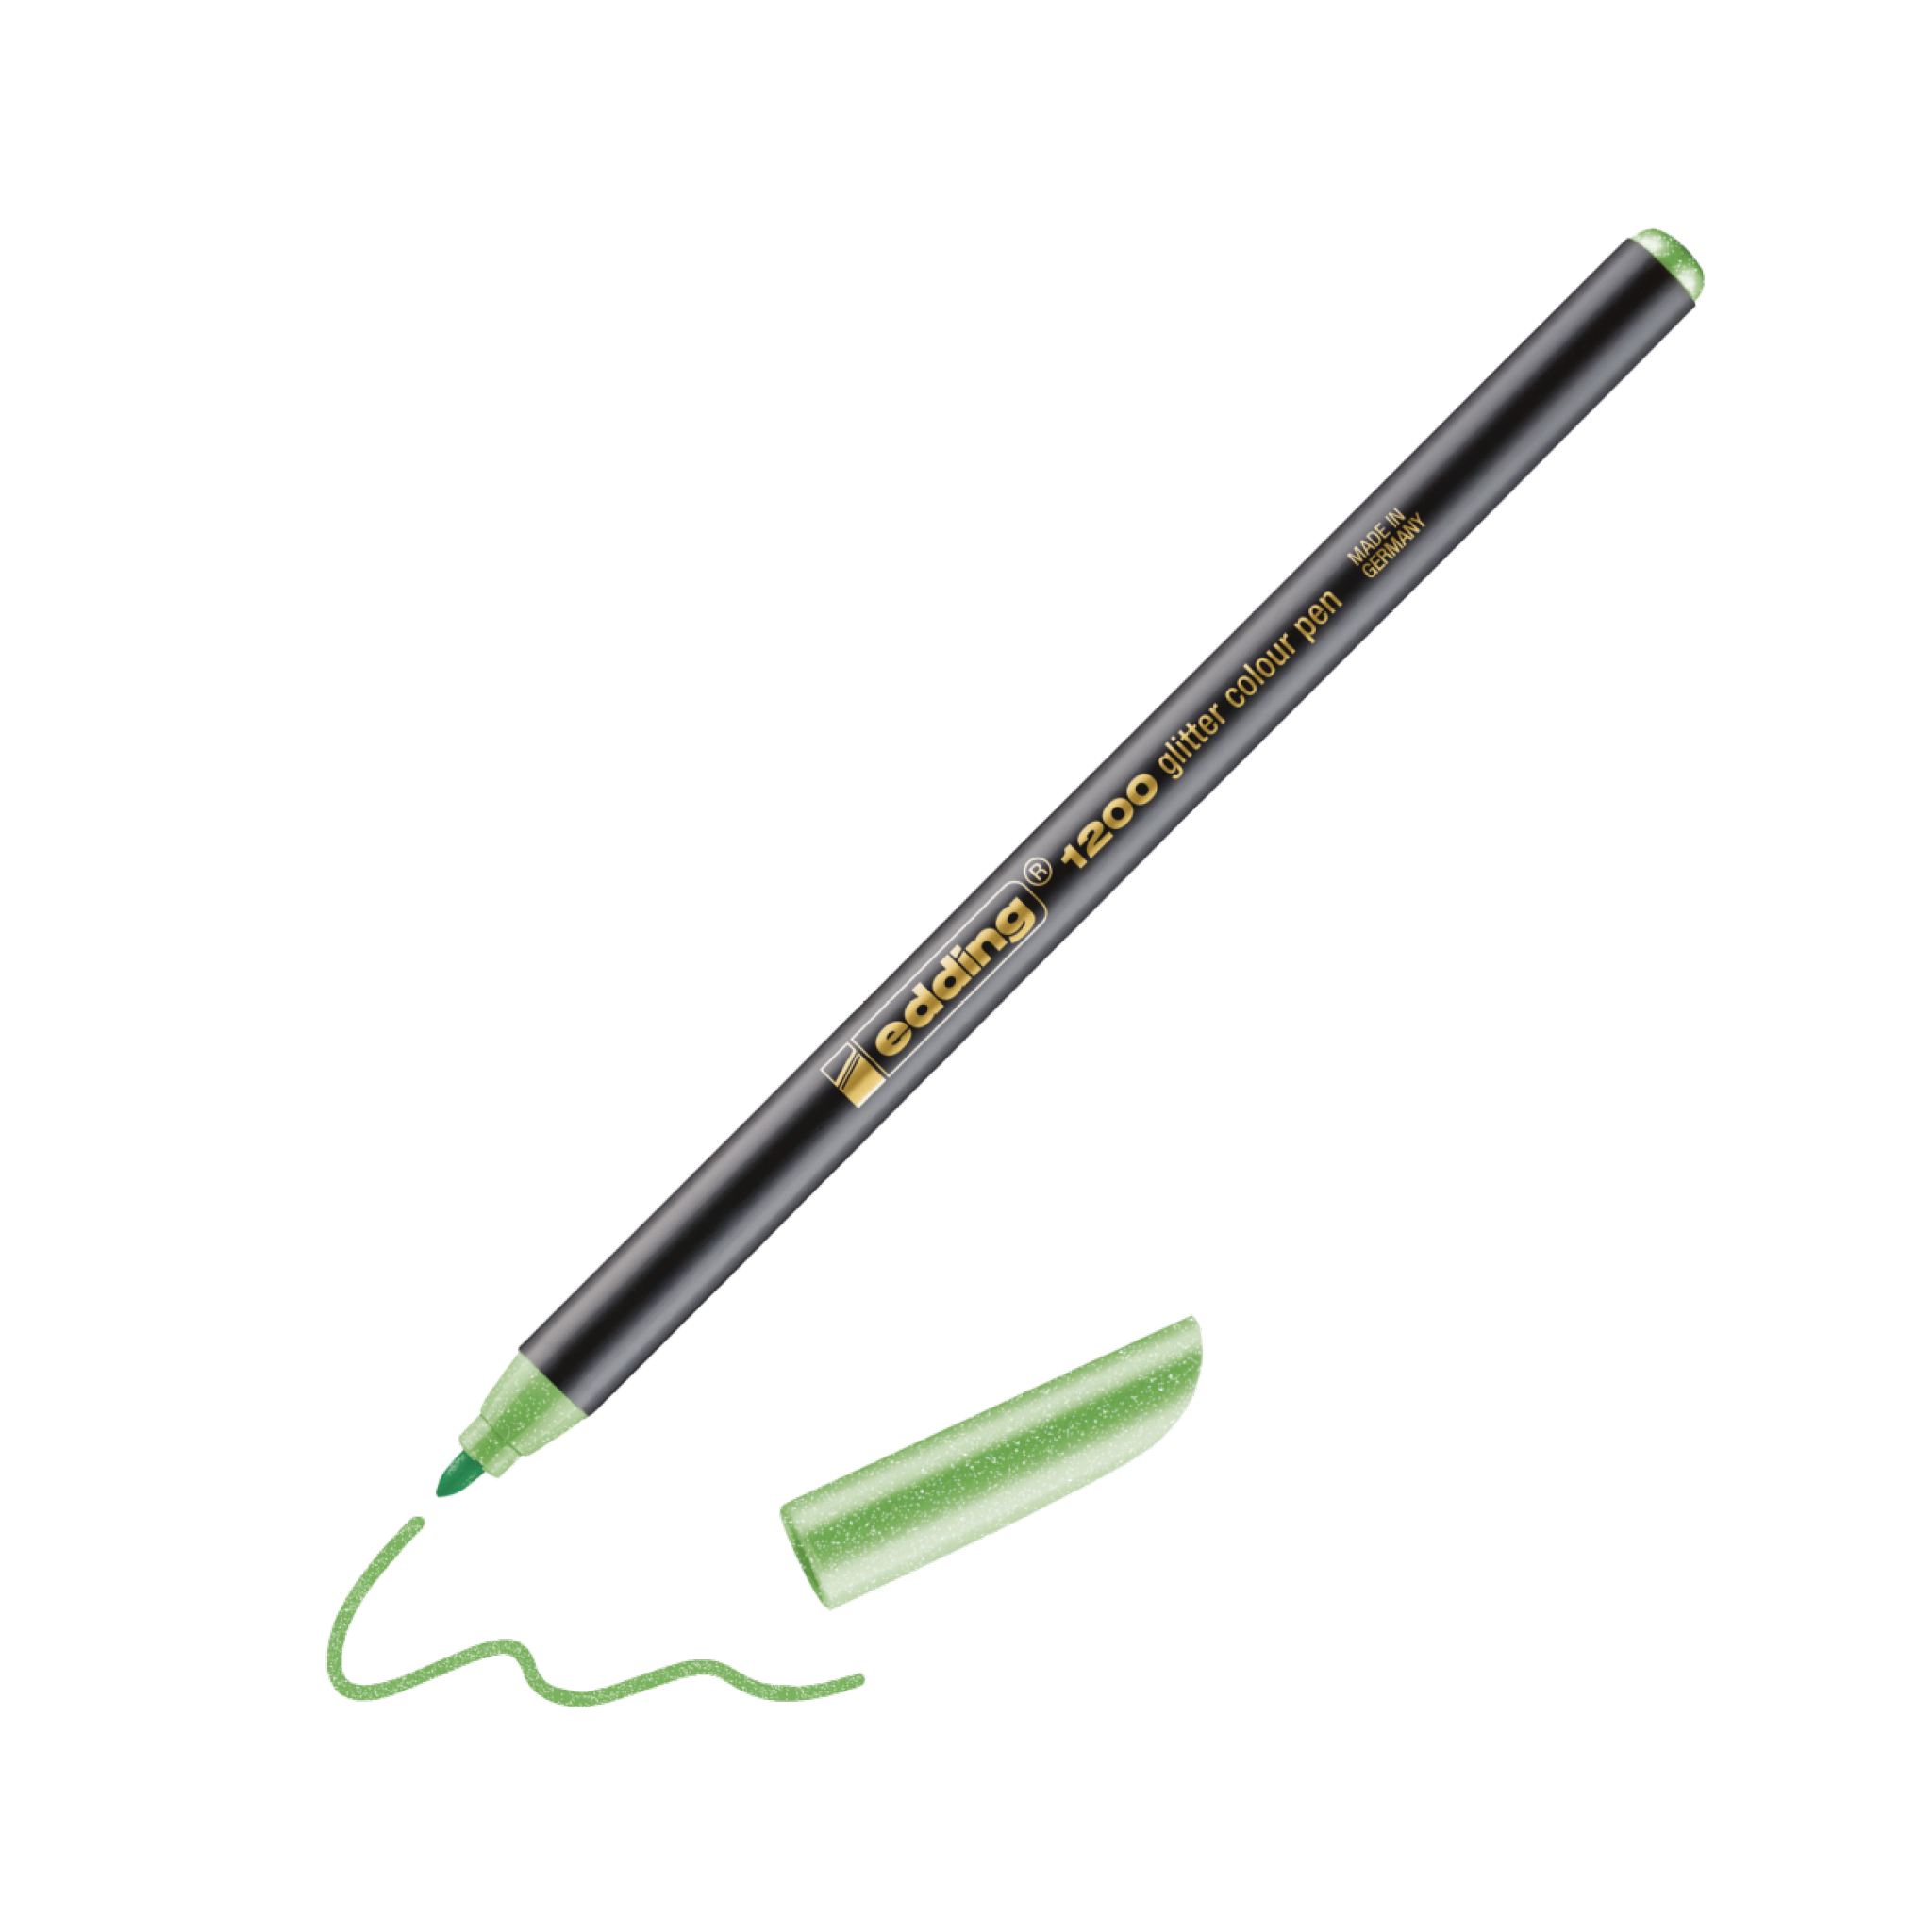 Eine realistische digitale Illustration eines schwarzen edding 1200 Glitzer Fasermalers mit grüner Kappe, der eine wellenförmige grüne Linie auf weißem Hintergrund schreibt. Der Marker trägt die Aufschrift „Copic Sketch 7000 Bright“.